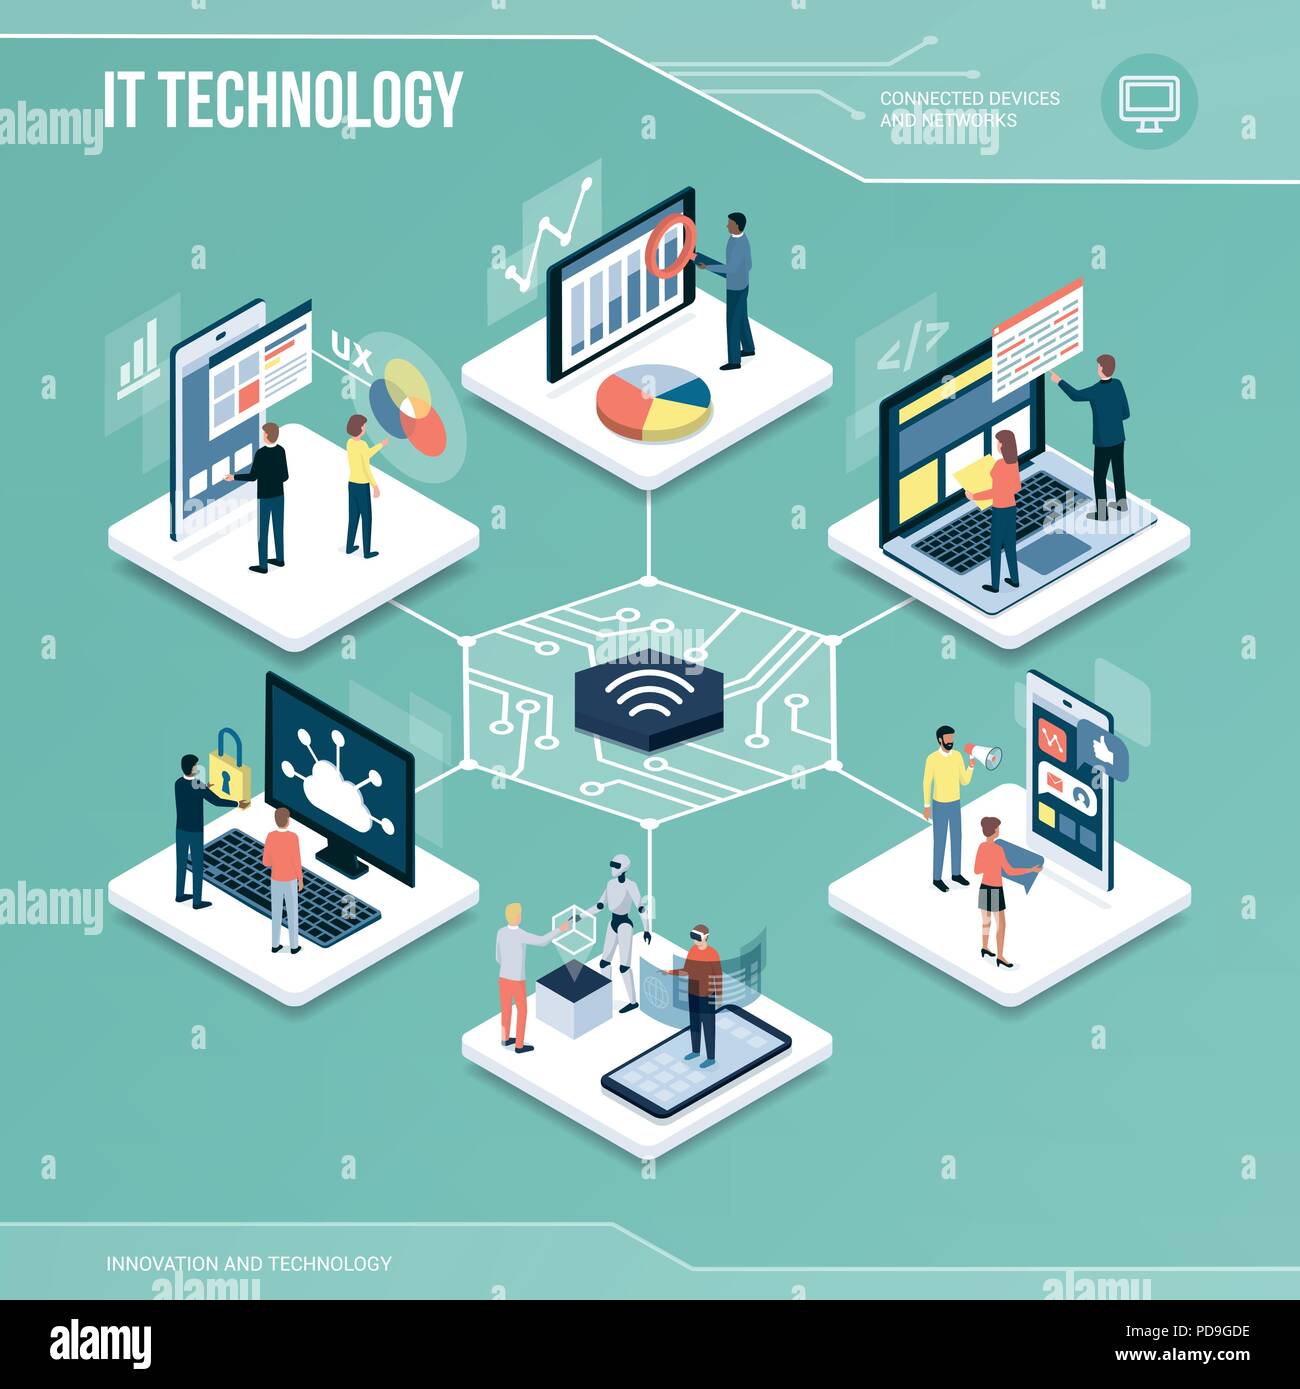 Digitaler Kern: IT-Technologie, Marketing und Netzwerke isometrische Infografik mit Menschen Stock Vektor